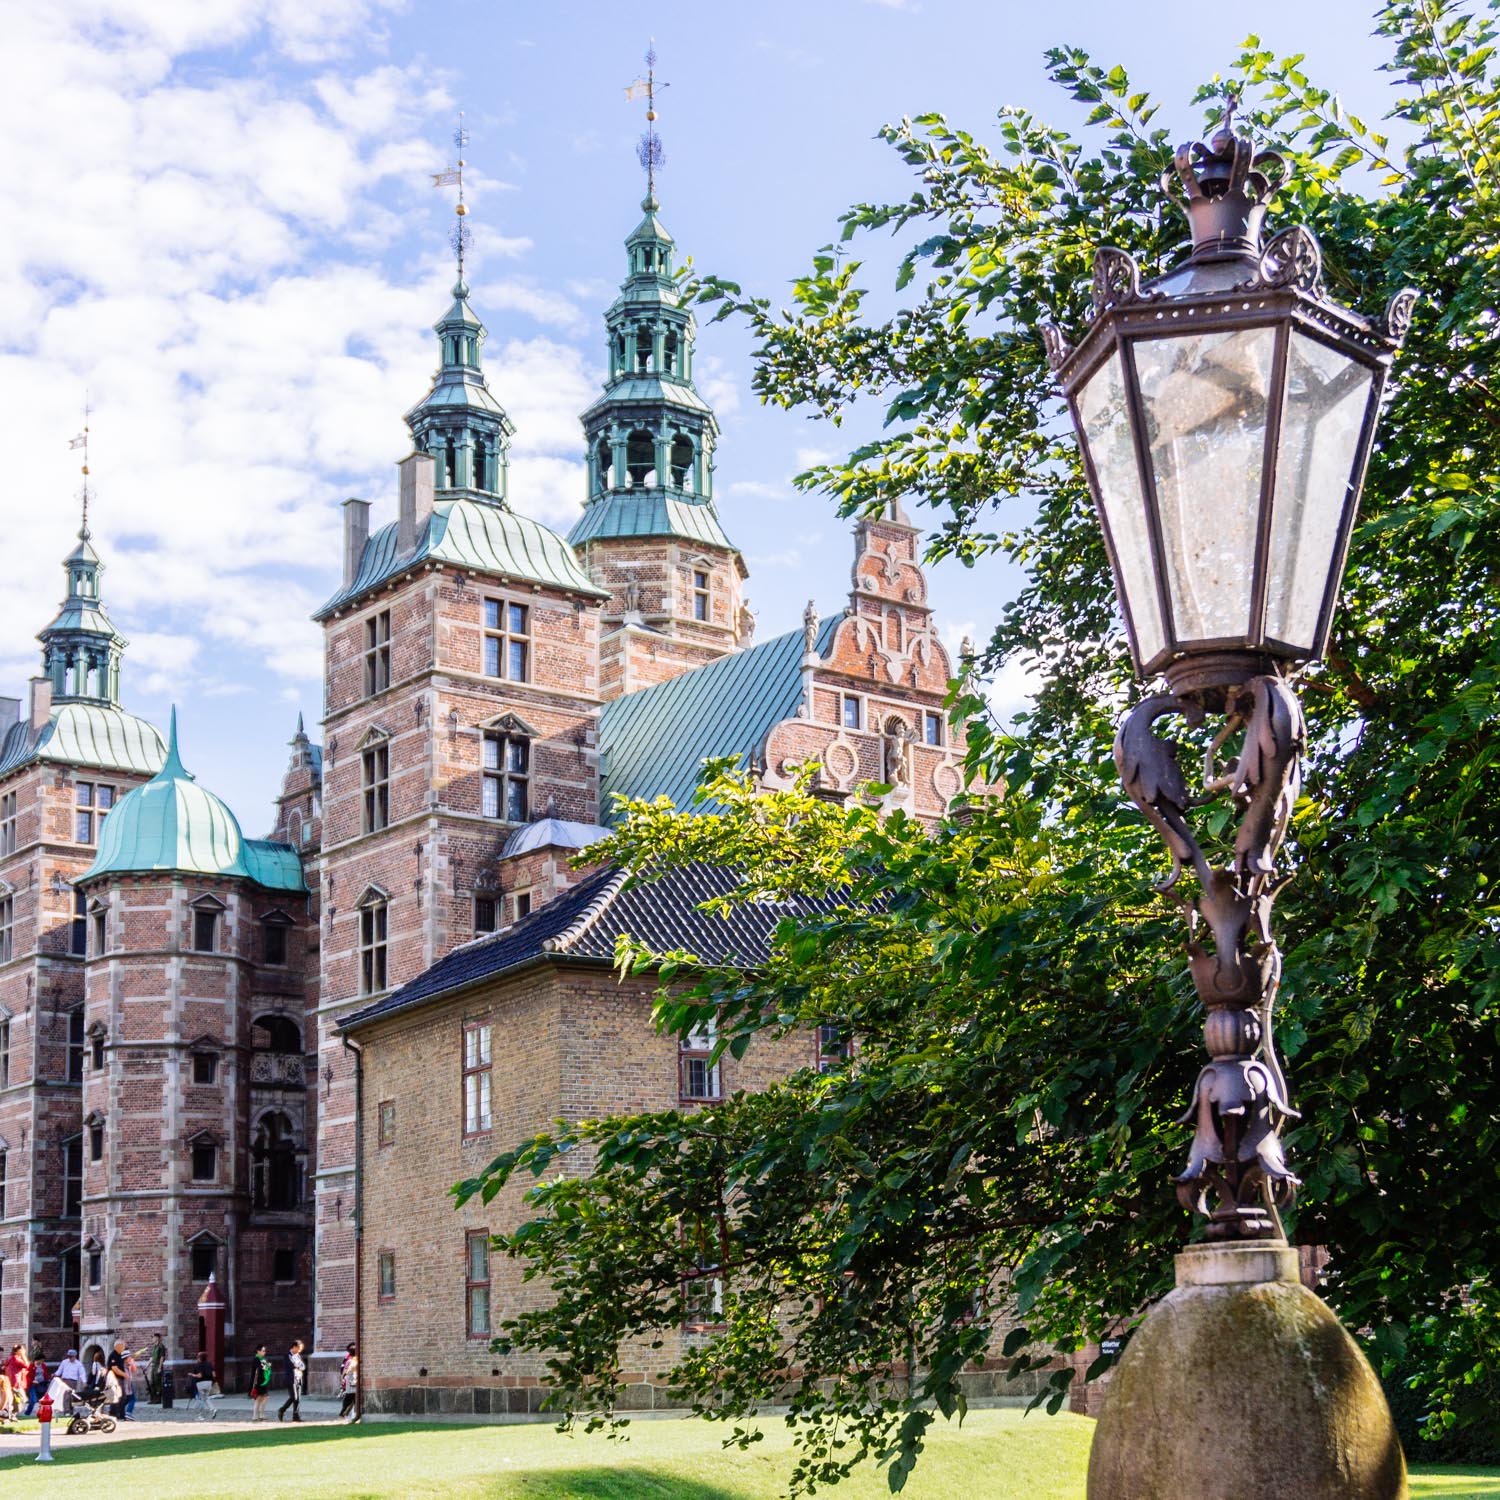 A weekend in Copenhagen – Rosenborg Castle